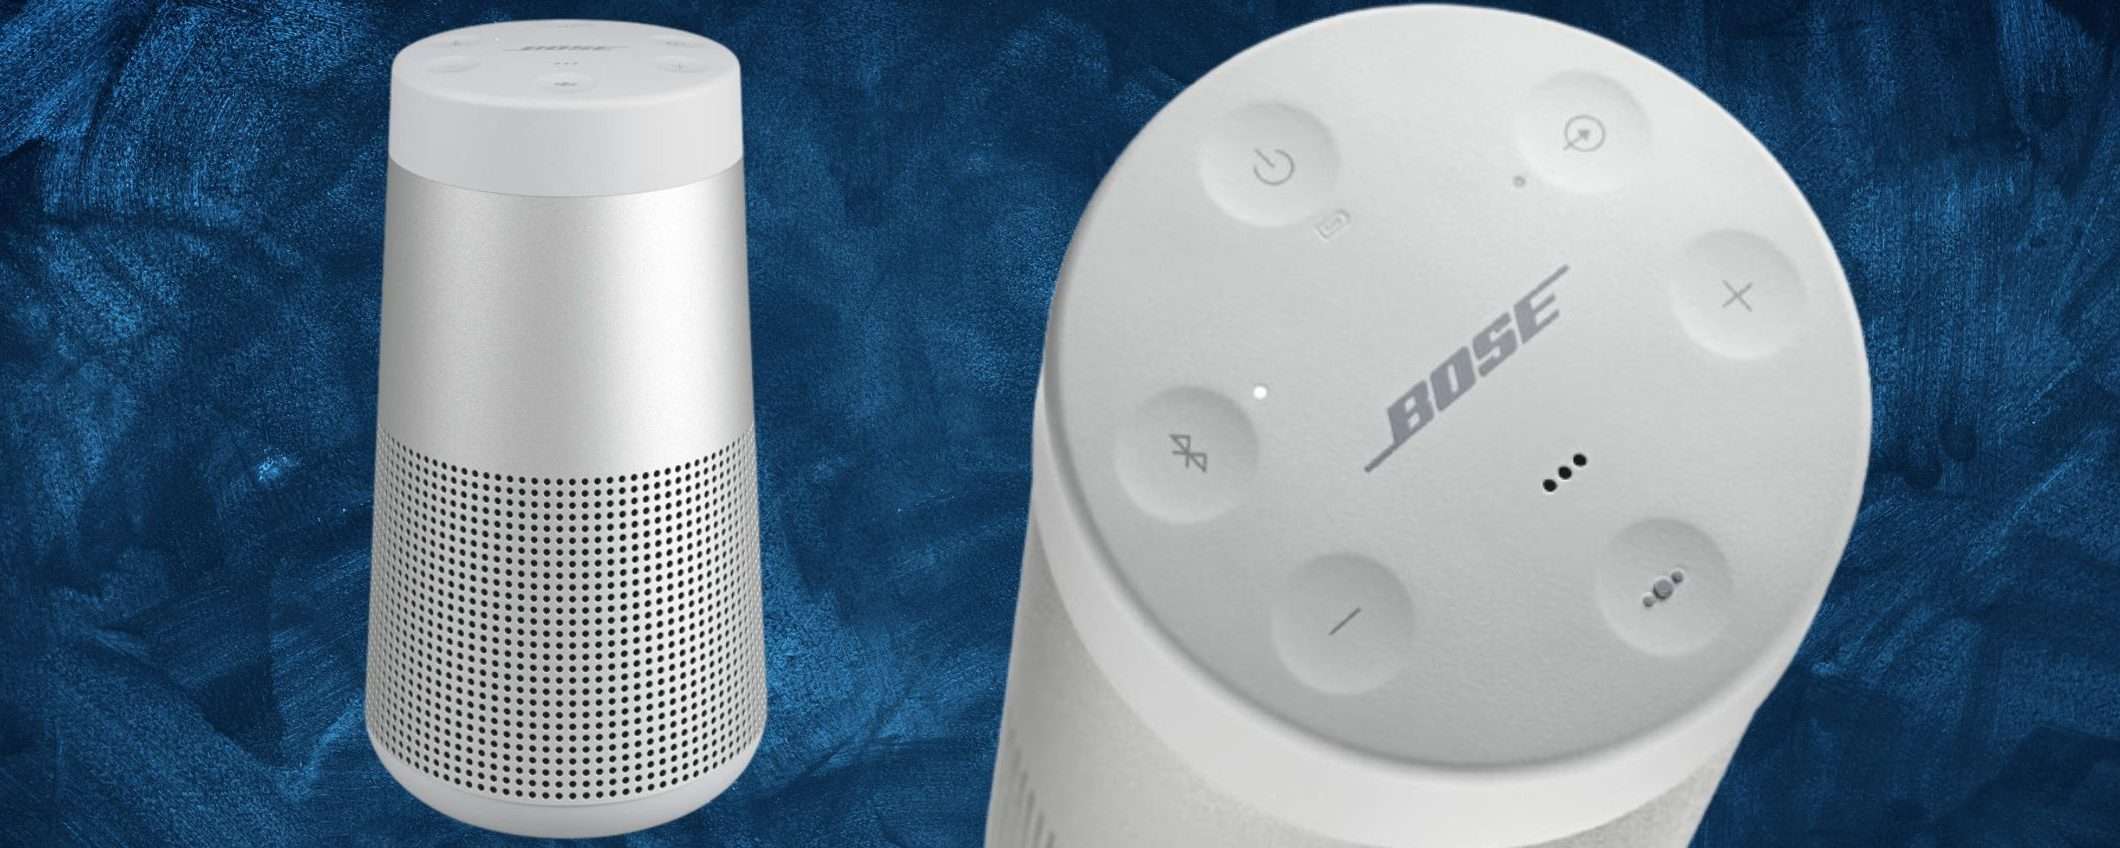 Bose SoundLink Revolve II CROLLA su Amazon: suono PREMIUM prezzo accessibile